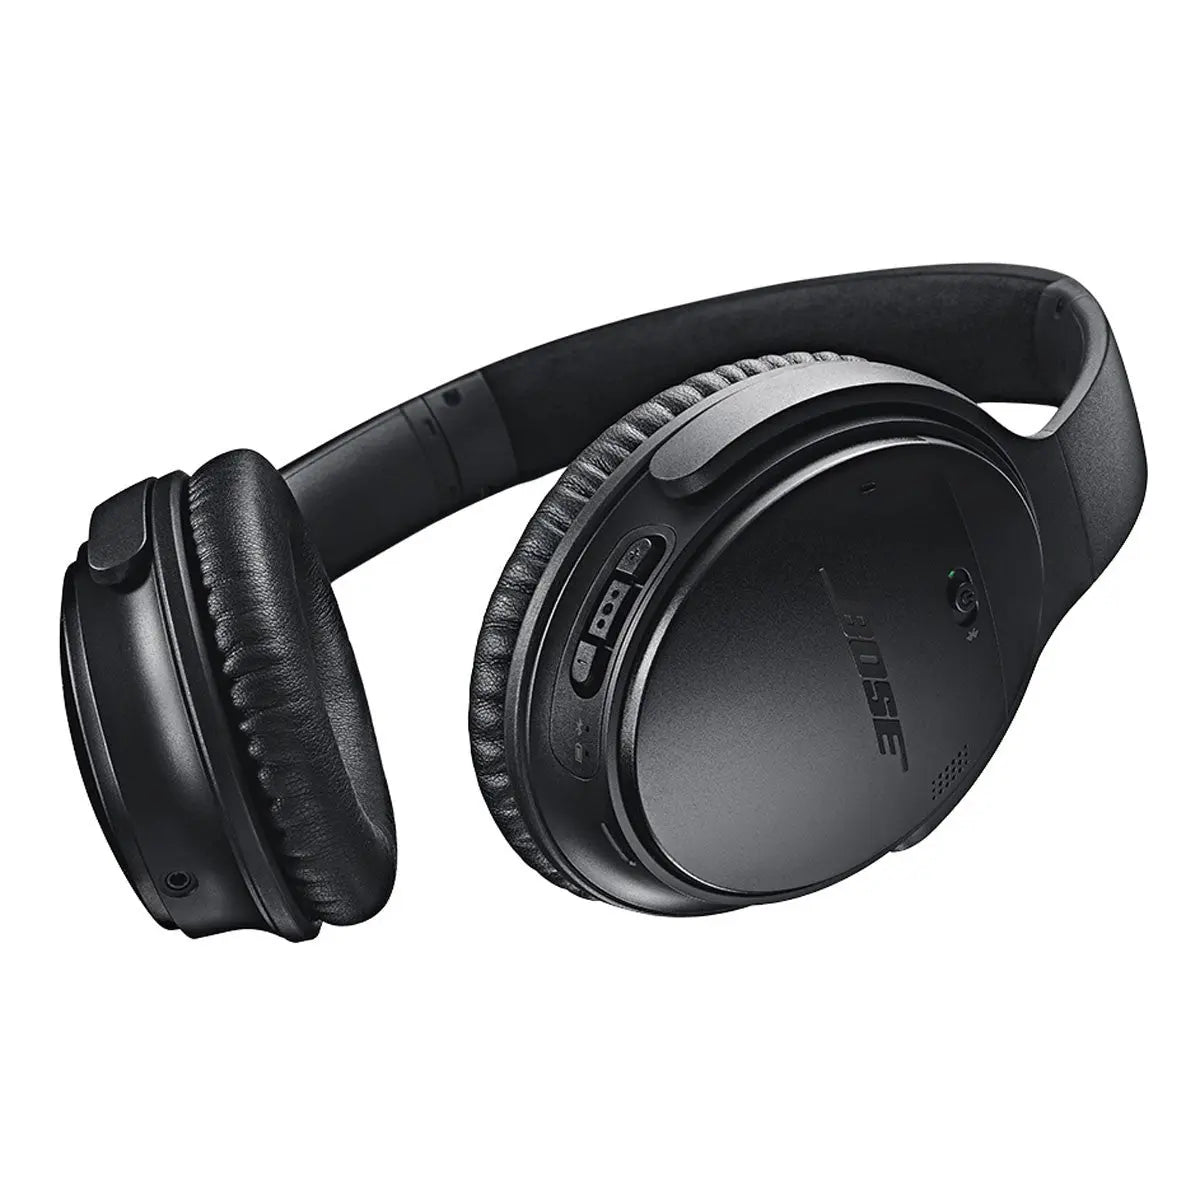 Casque audio Bluetooth Bose QuietComfort 35 Wireless Noir Bose audio